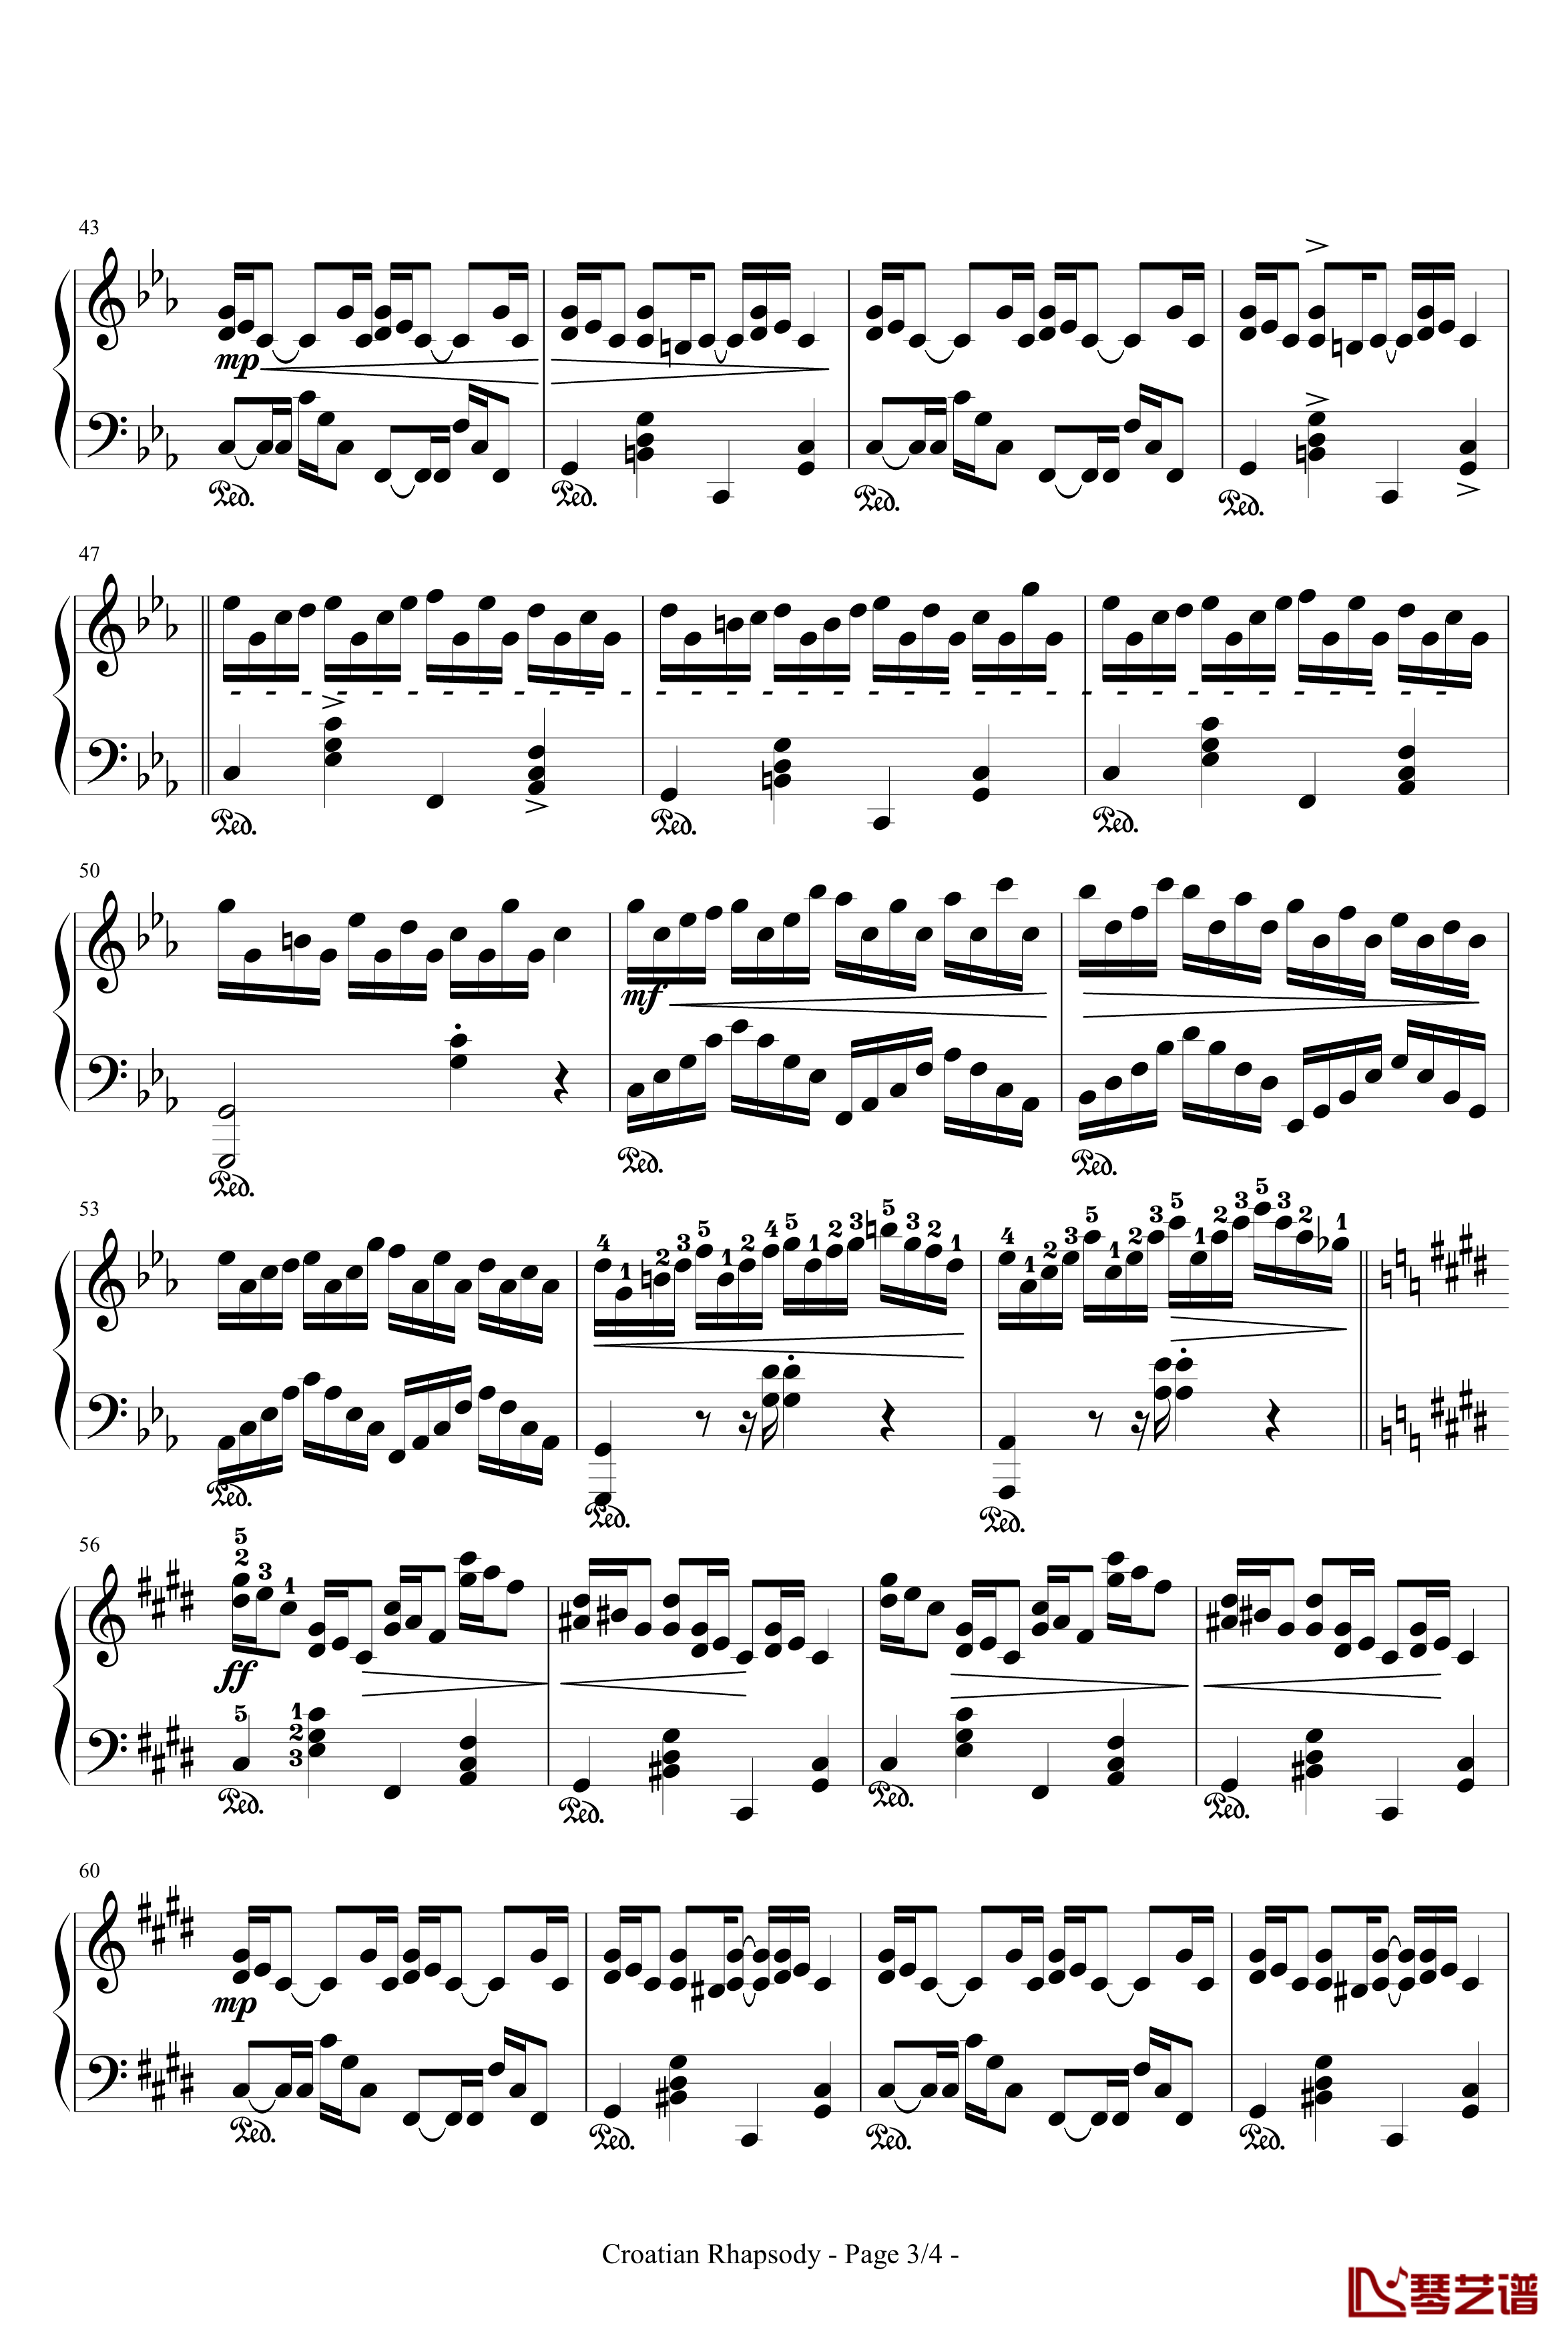 克罗地亚狂想曲钢琴谱-带指法-马克西姆-Maksim·Mrvica3